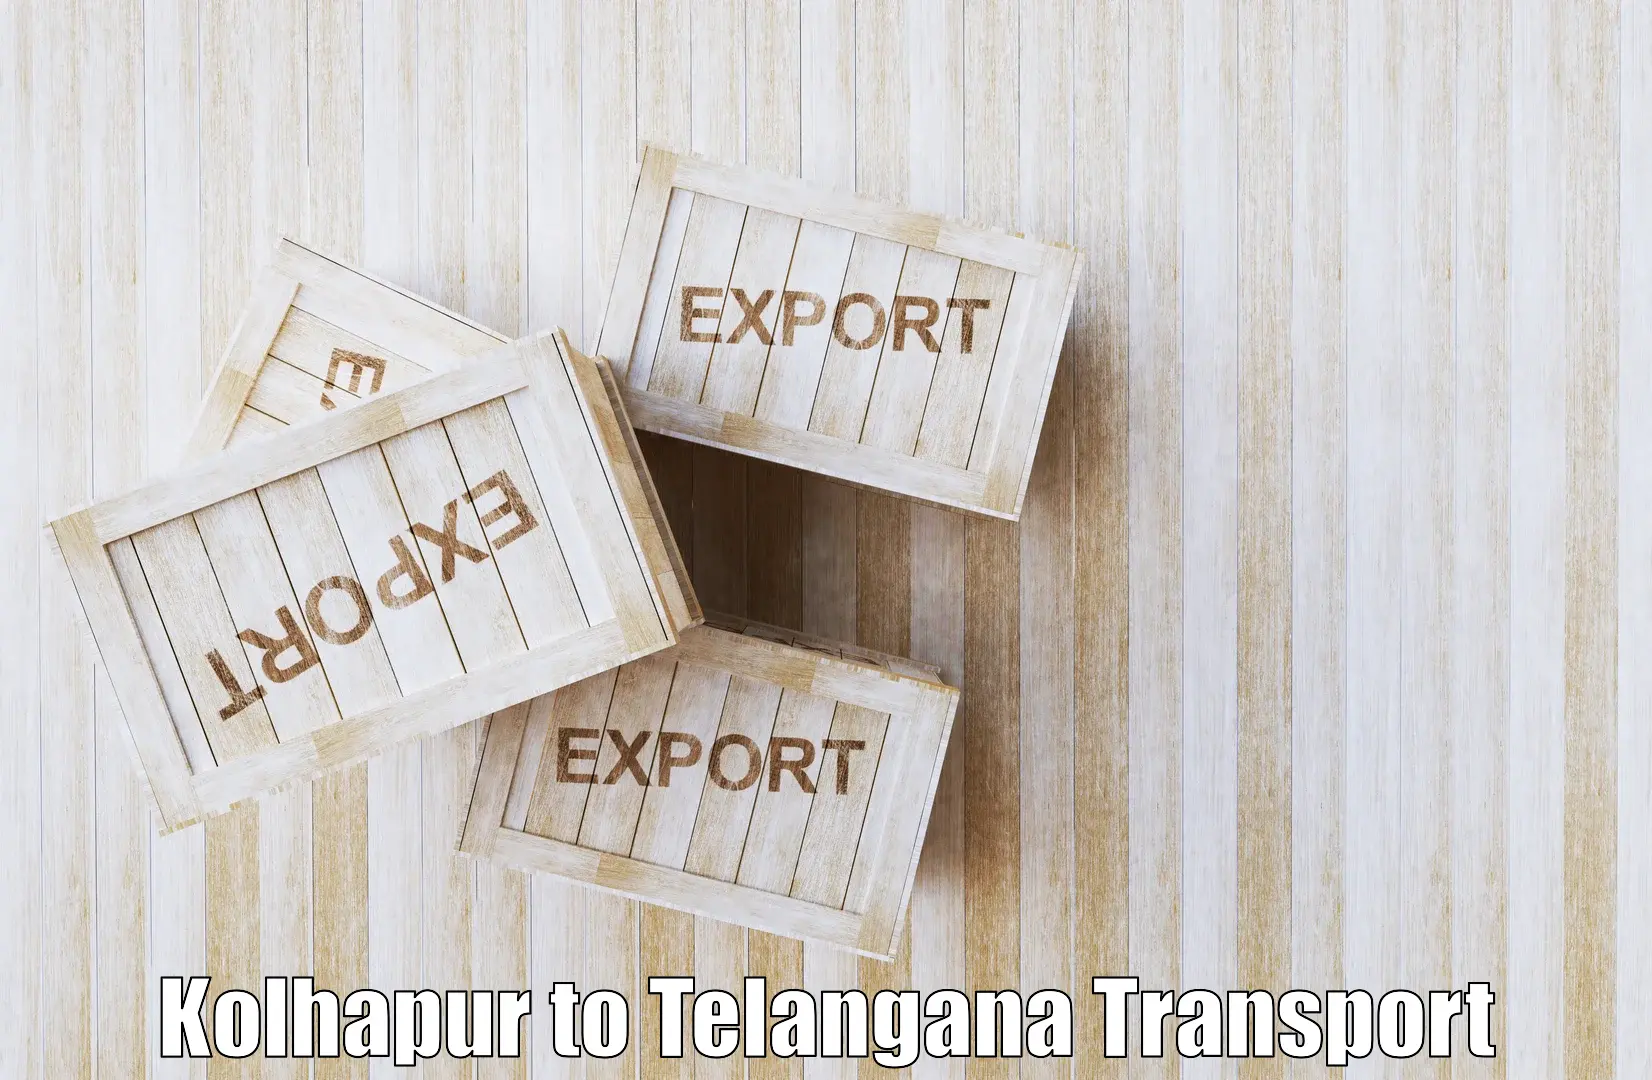 Intercity transport in Kolhapur to Tiryani